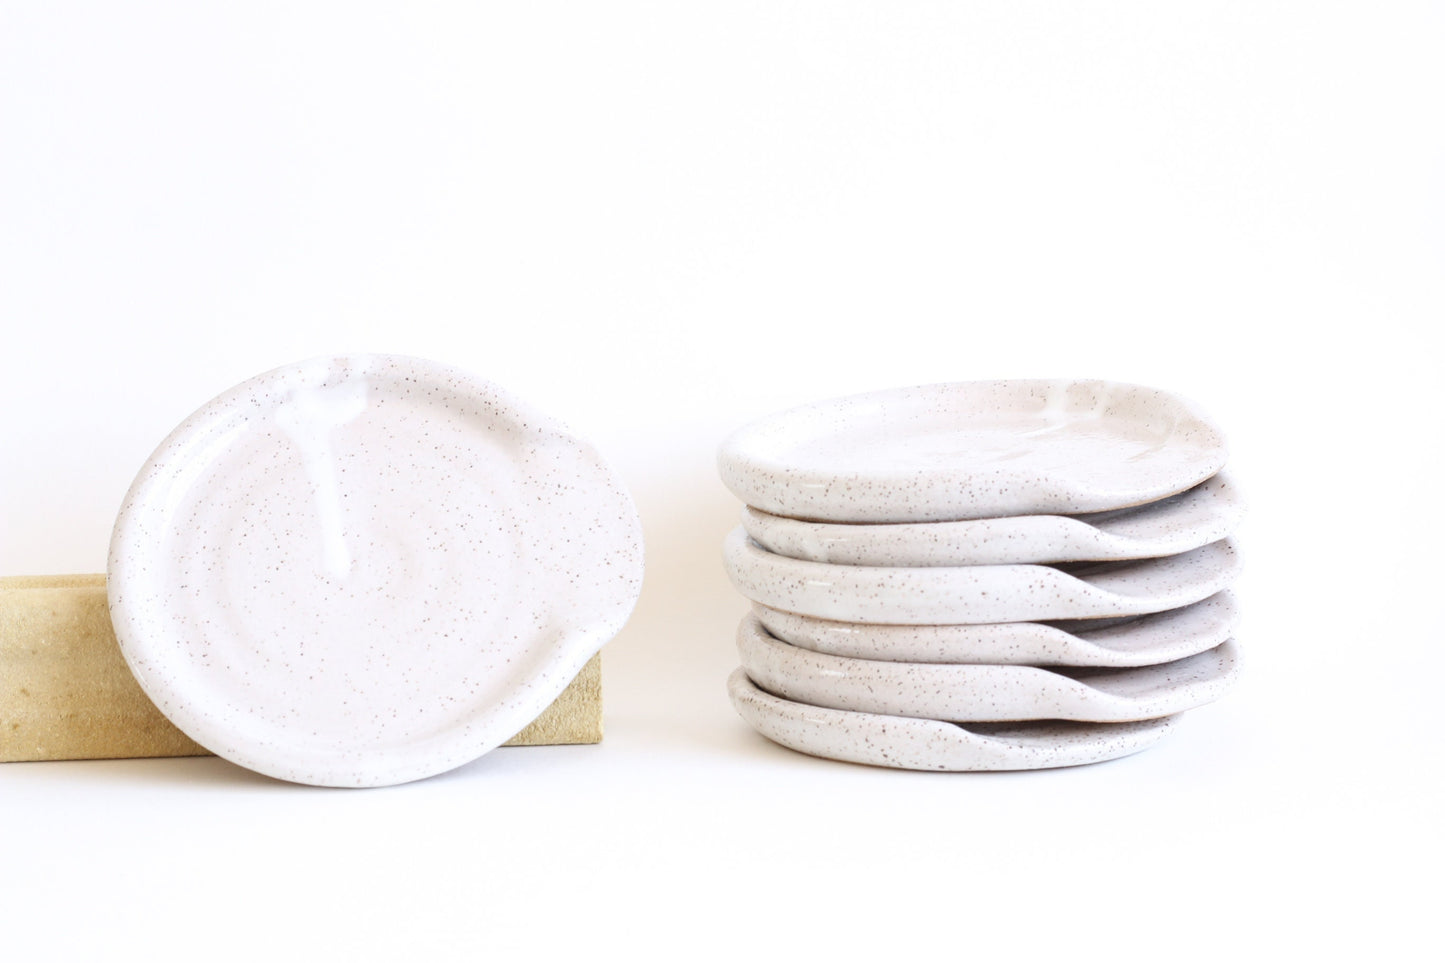 White Glossy Speckled Buff Stoneware Ceramic Spoon Rest - Wheel Thrown, Minimalist, Modern, Simple, Handmade Kitchenware